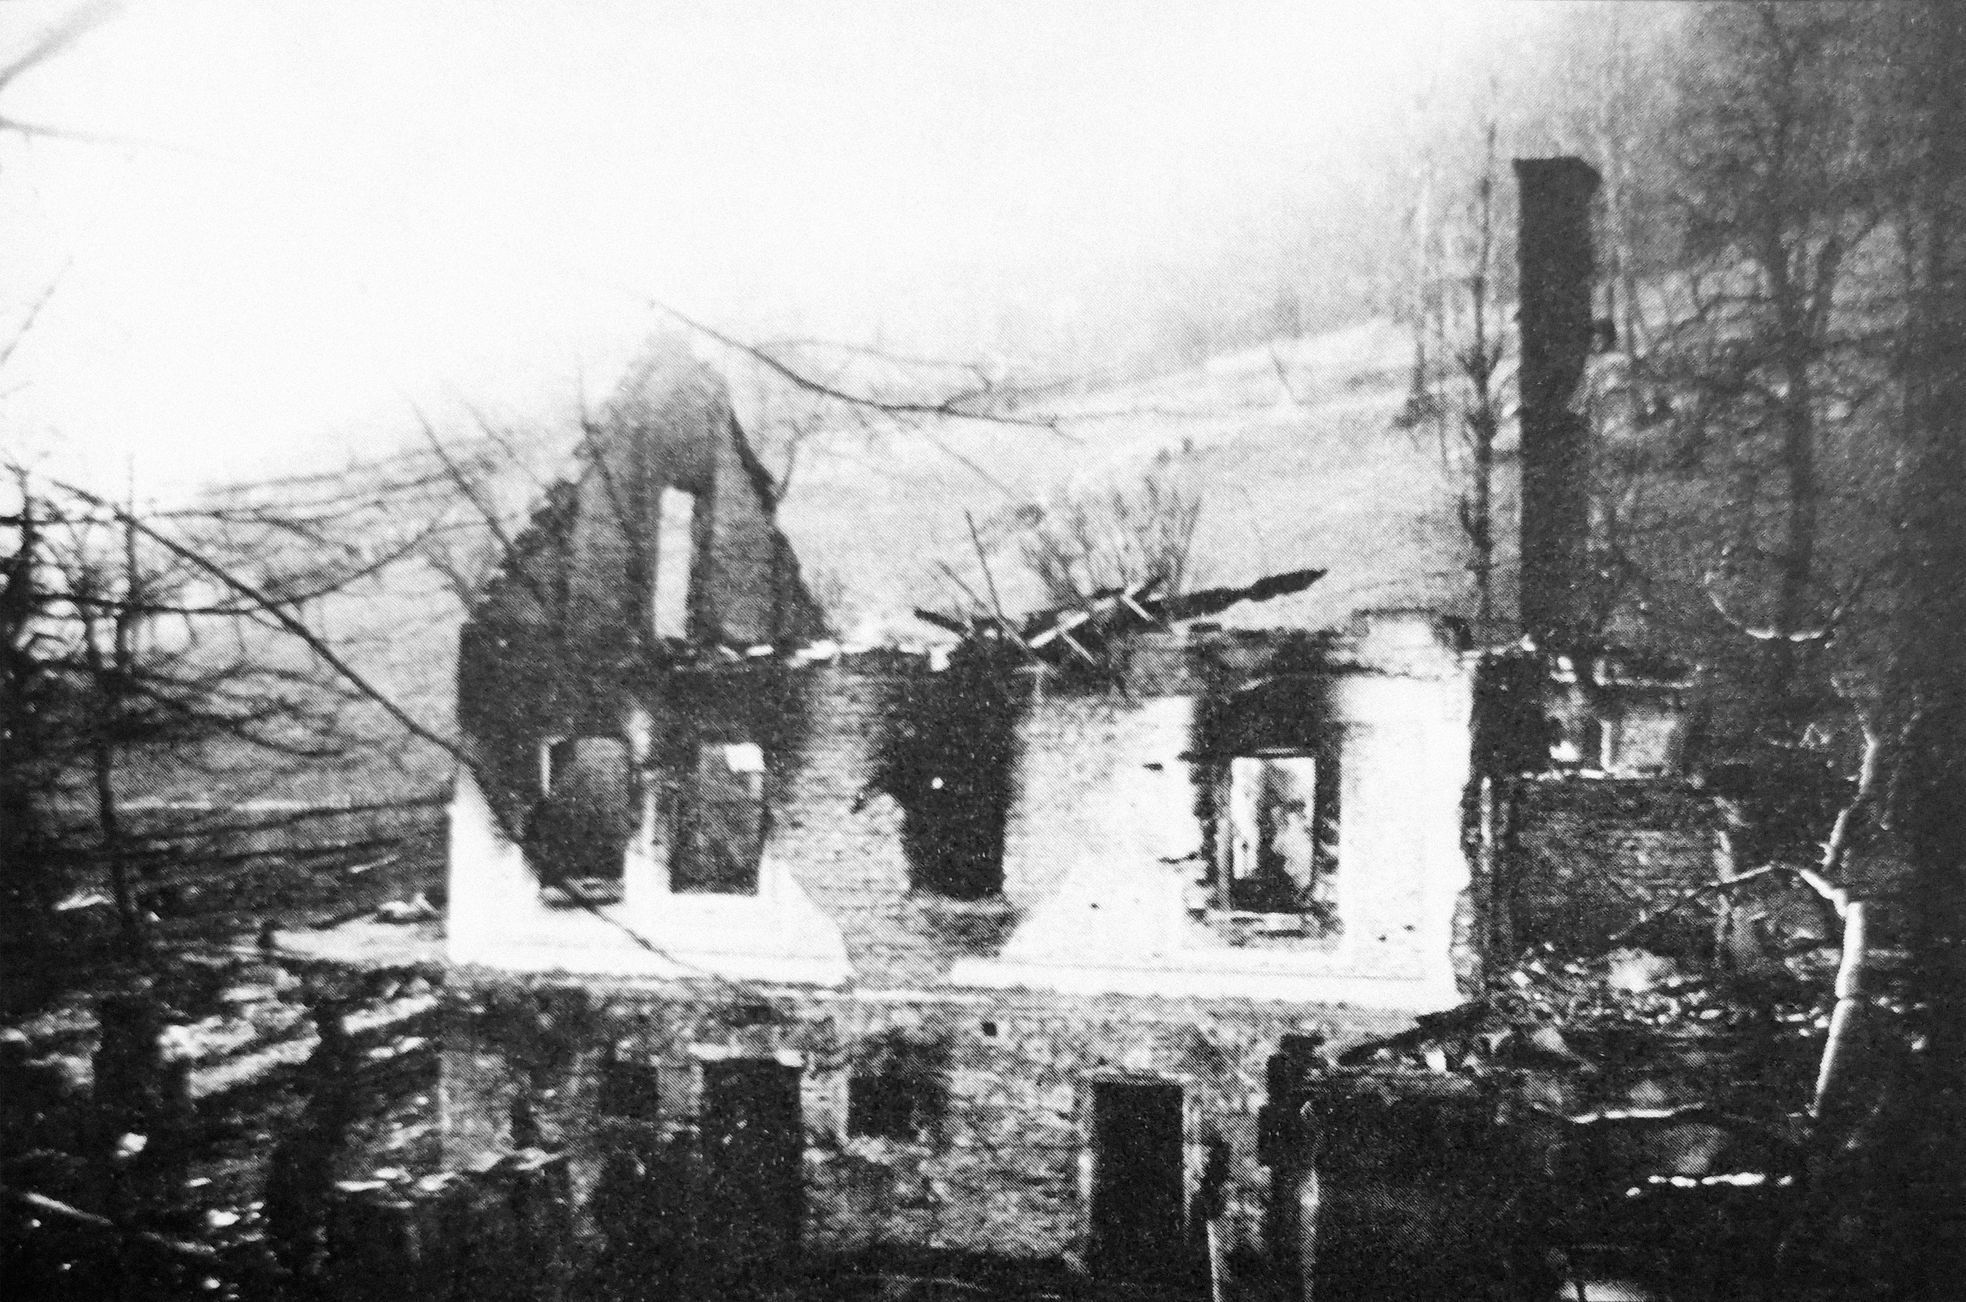 Jednorázové užití / Masakry a vypálené osady od nacistů v dubnu 1945